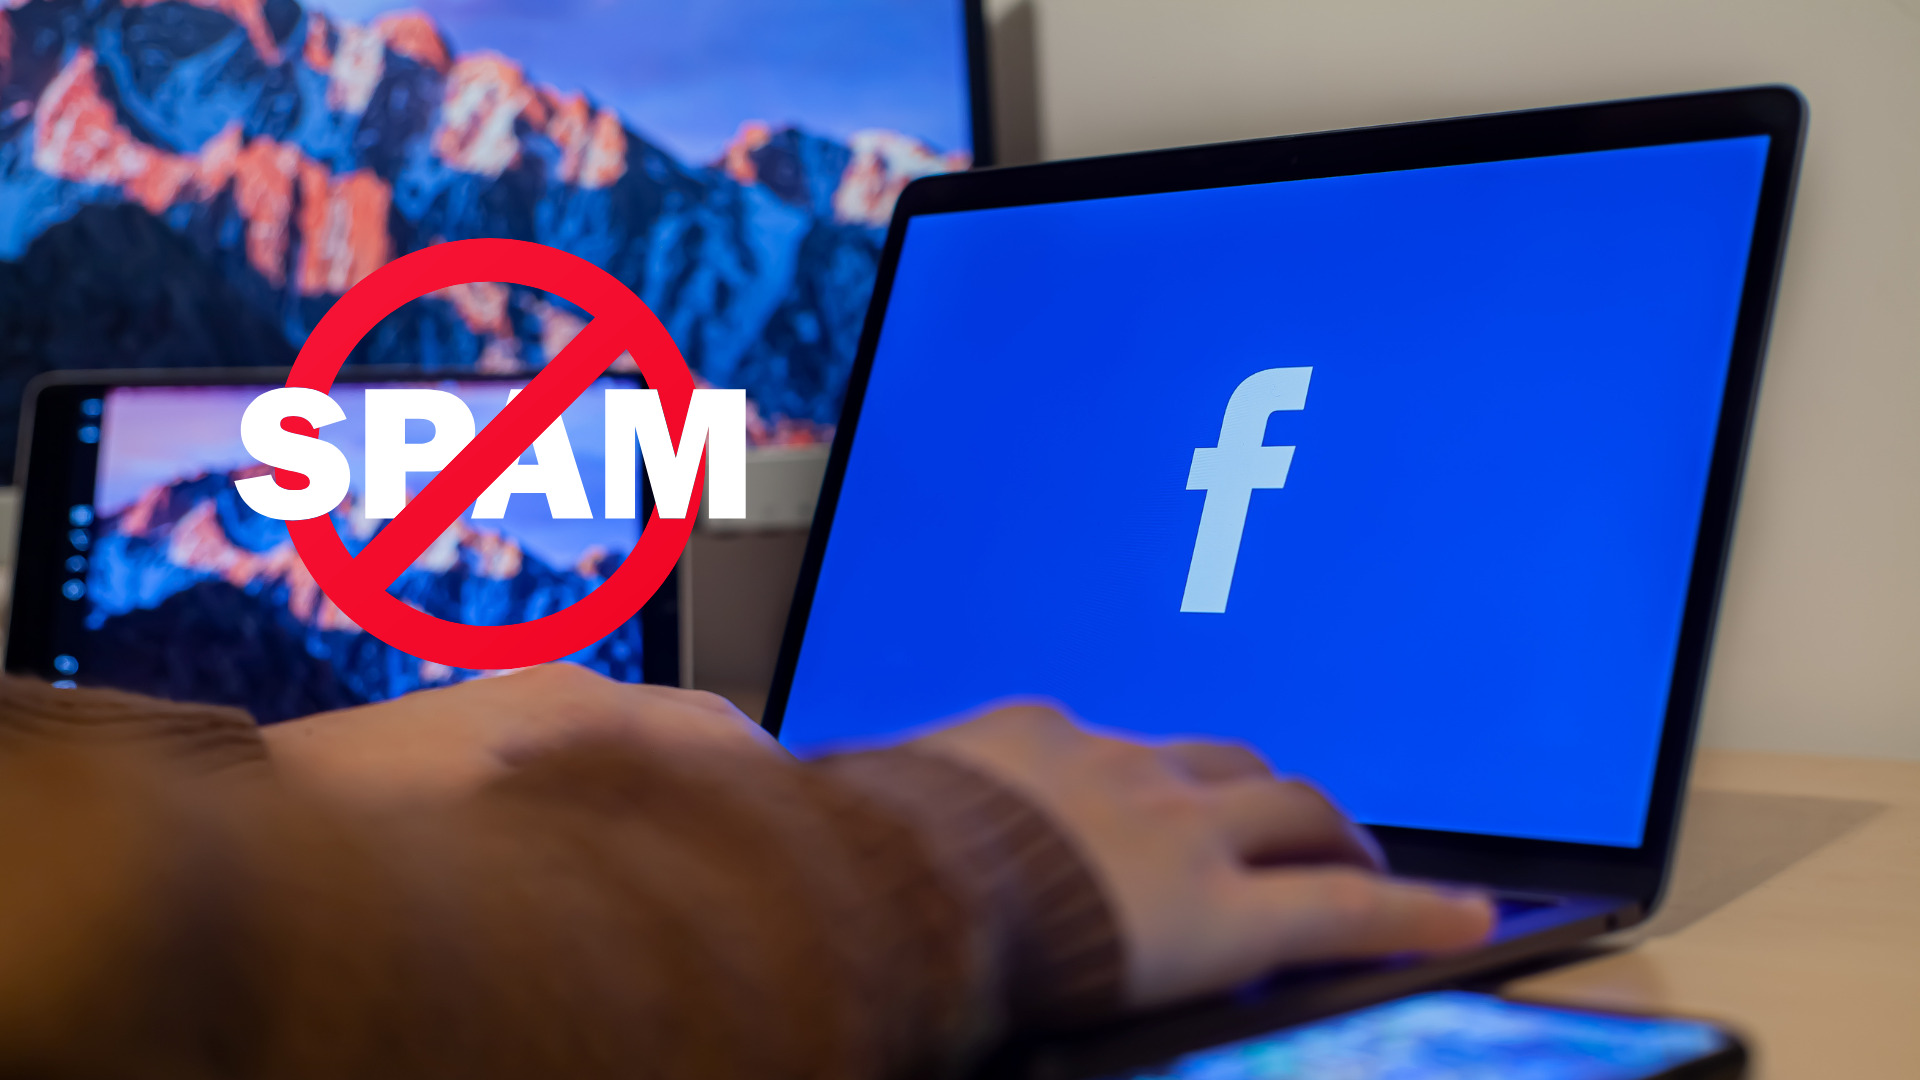 Cara Mengatasi Facebook Terkena Spam. Cara Memperbaiki Facebook Yang Kena Spam